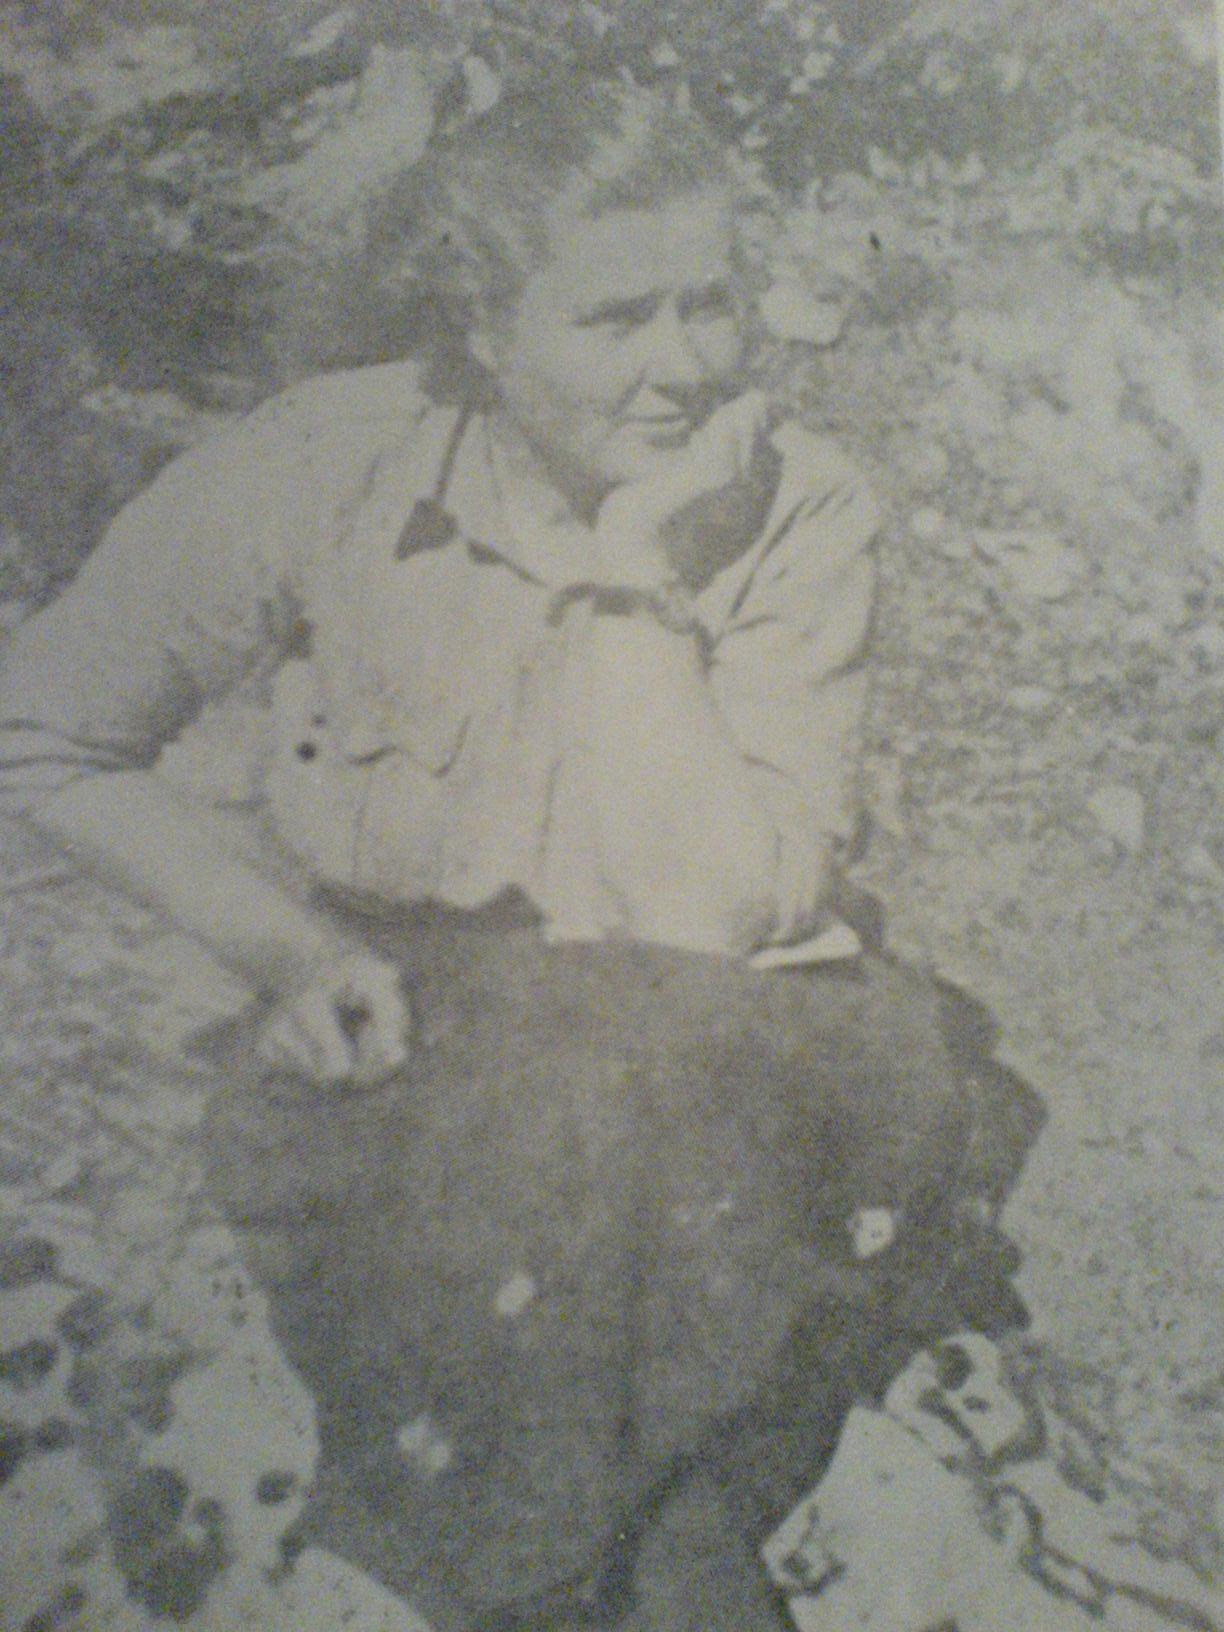 塔卡納·巴博維奇在波士尼亞（1942年7月）